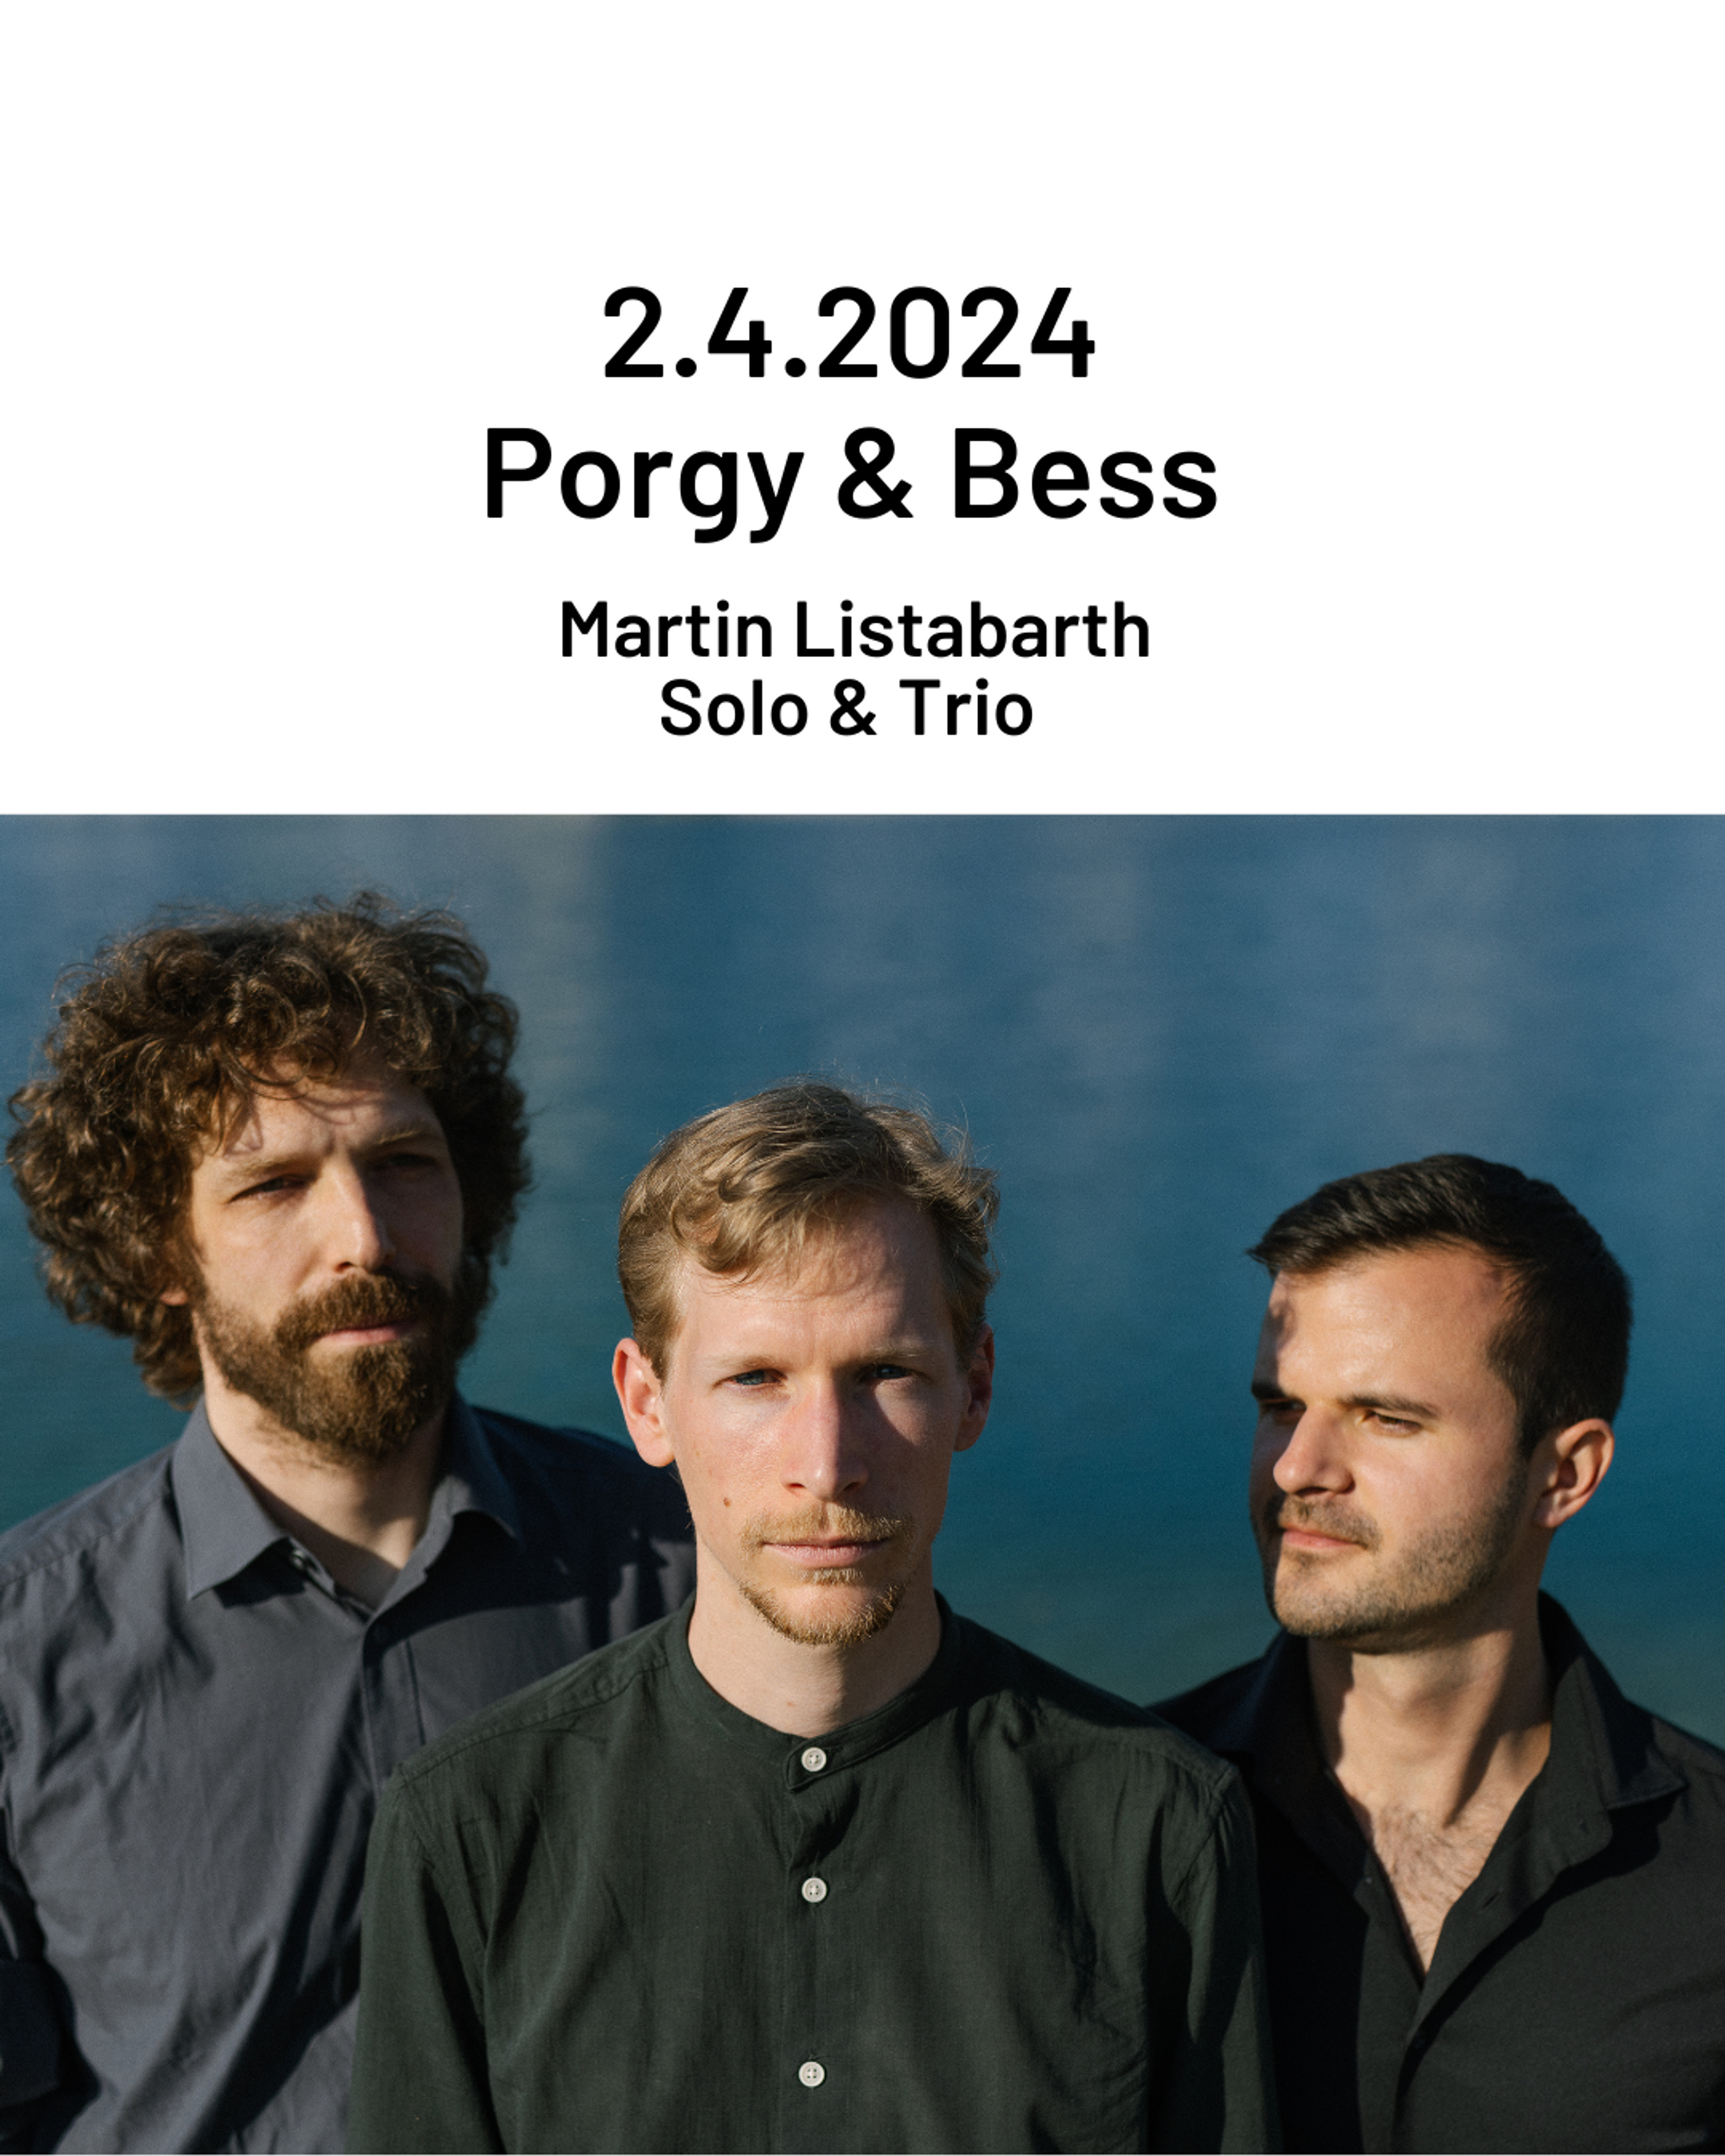 Konzertankündigung für das Konzert am 2.4.2024 im Porgy & Bess in Wien